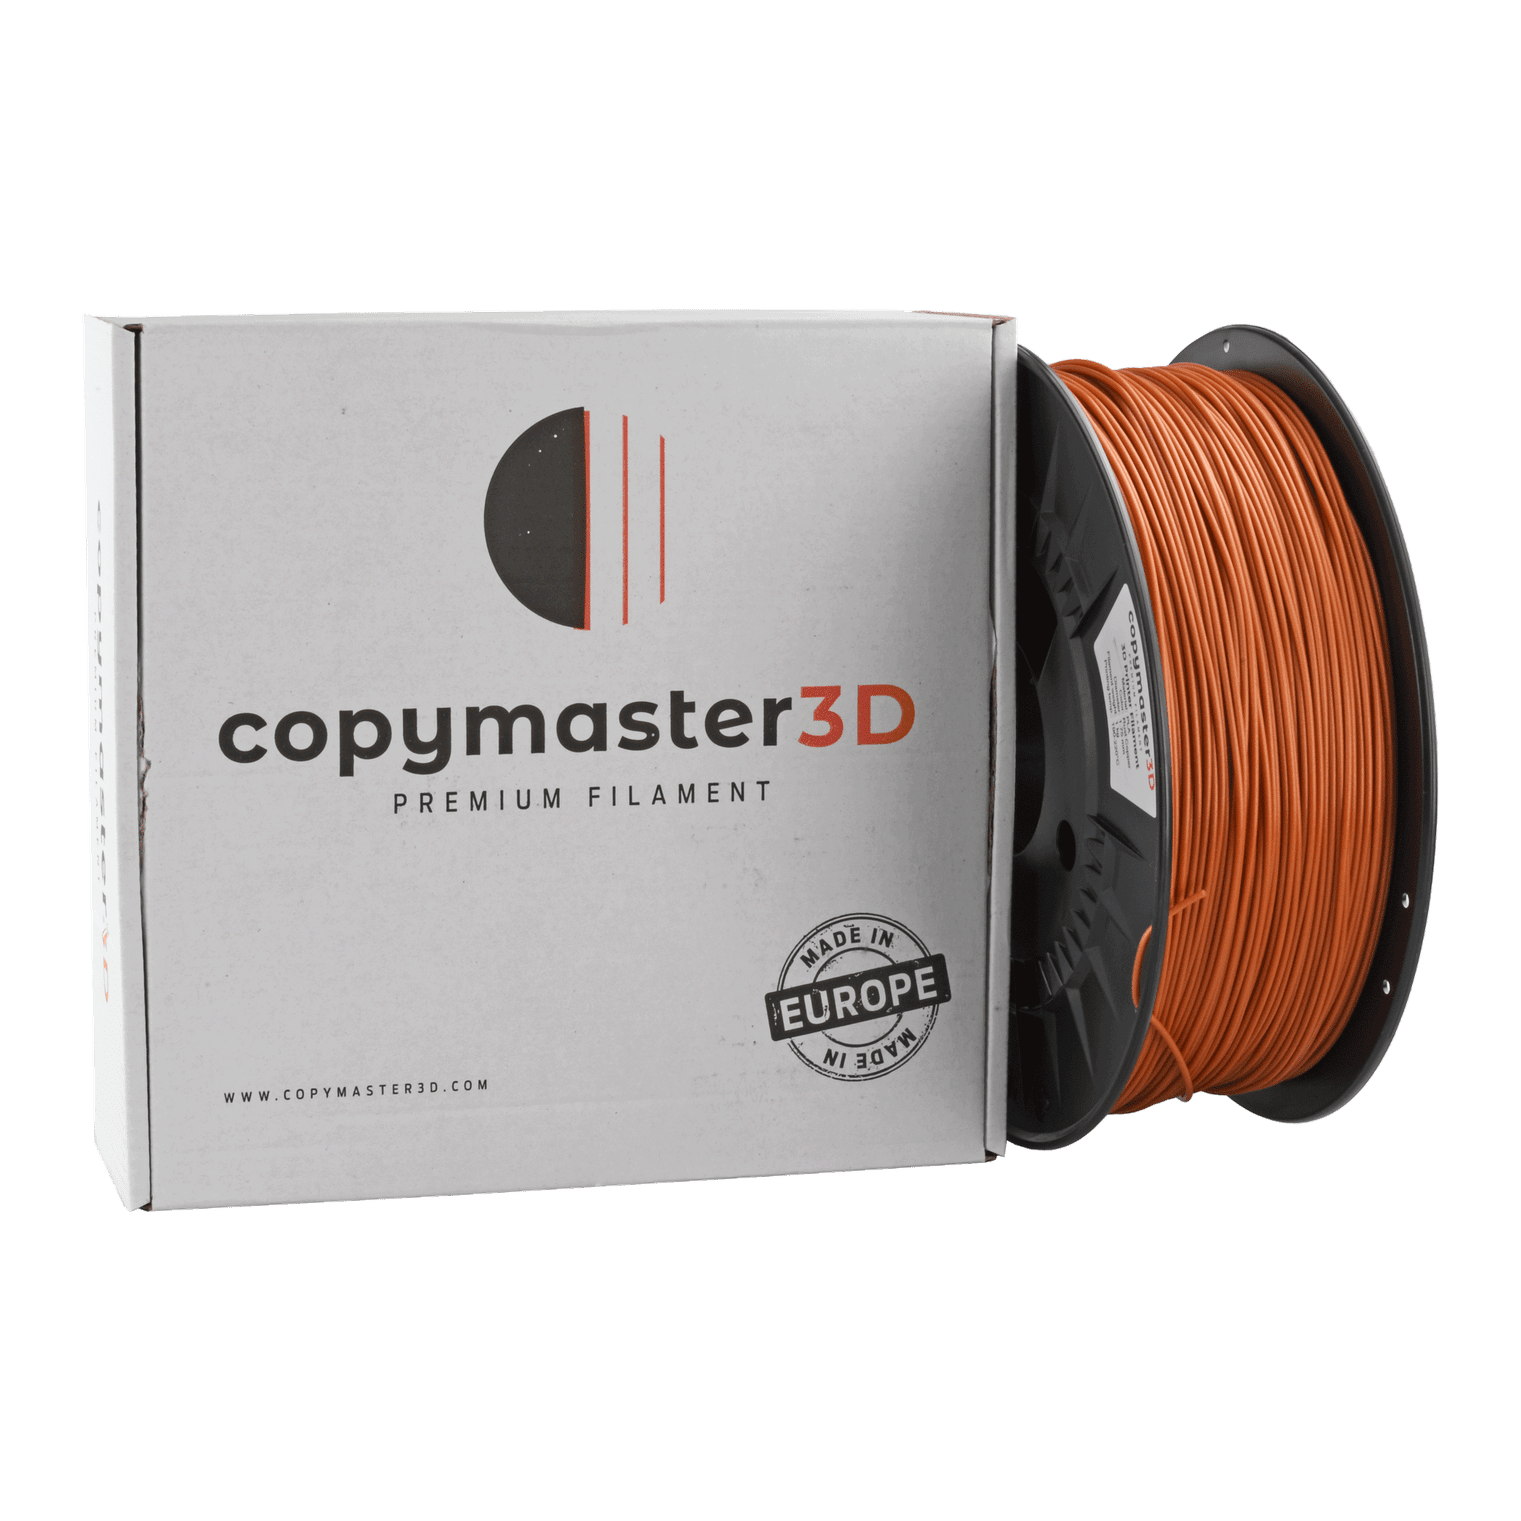 Copymaster3D Premium PLA Filament 1.75mm 1KG Rust Copper